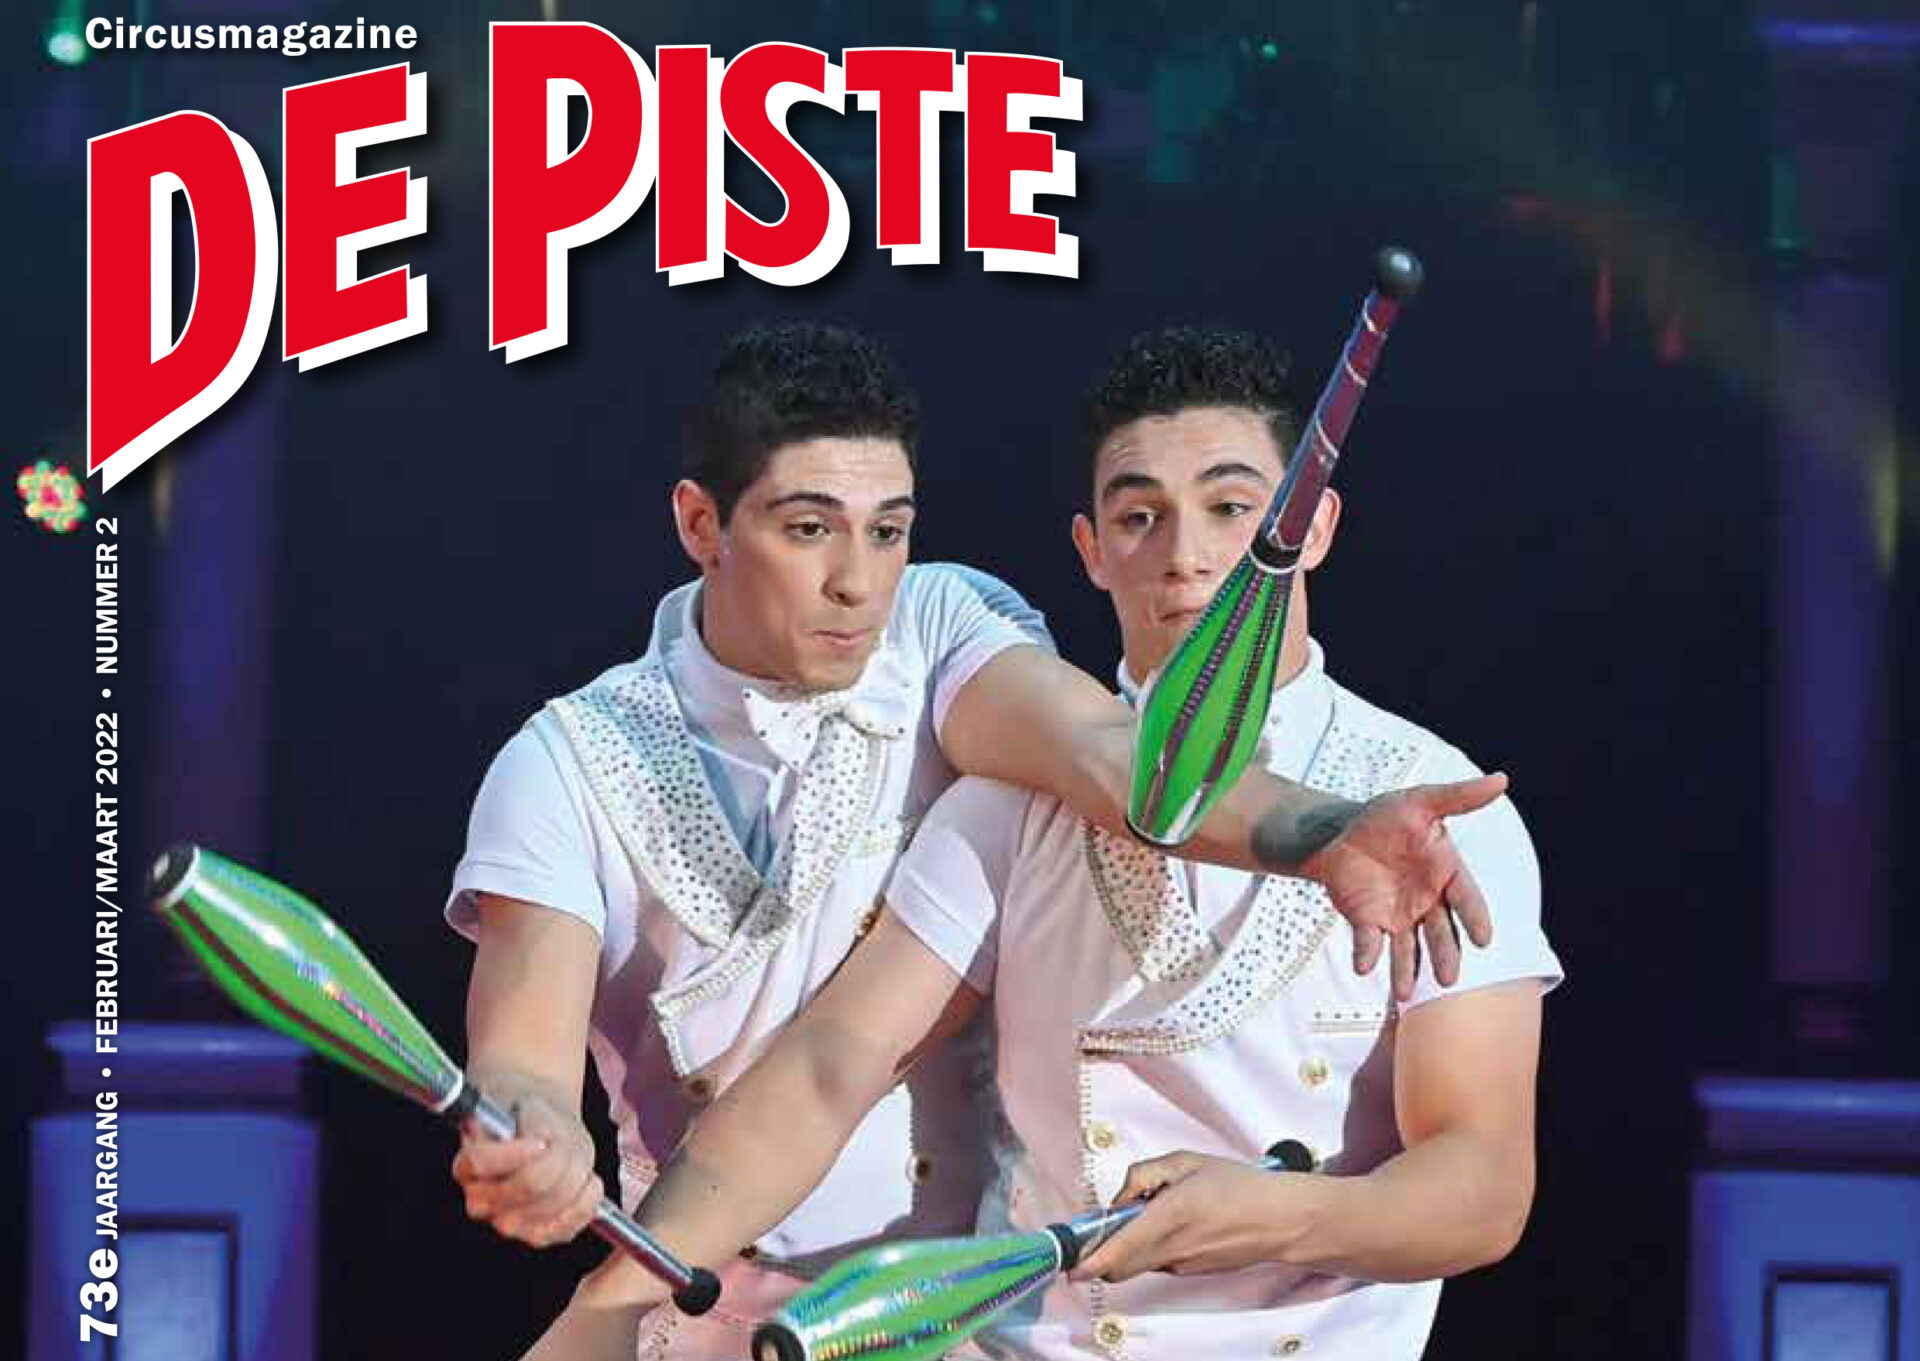 Februari/maartnummer van Circusmagazine De Piste uit!